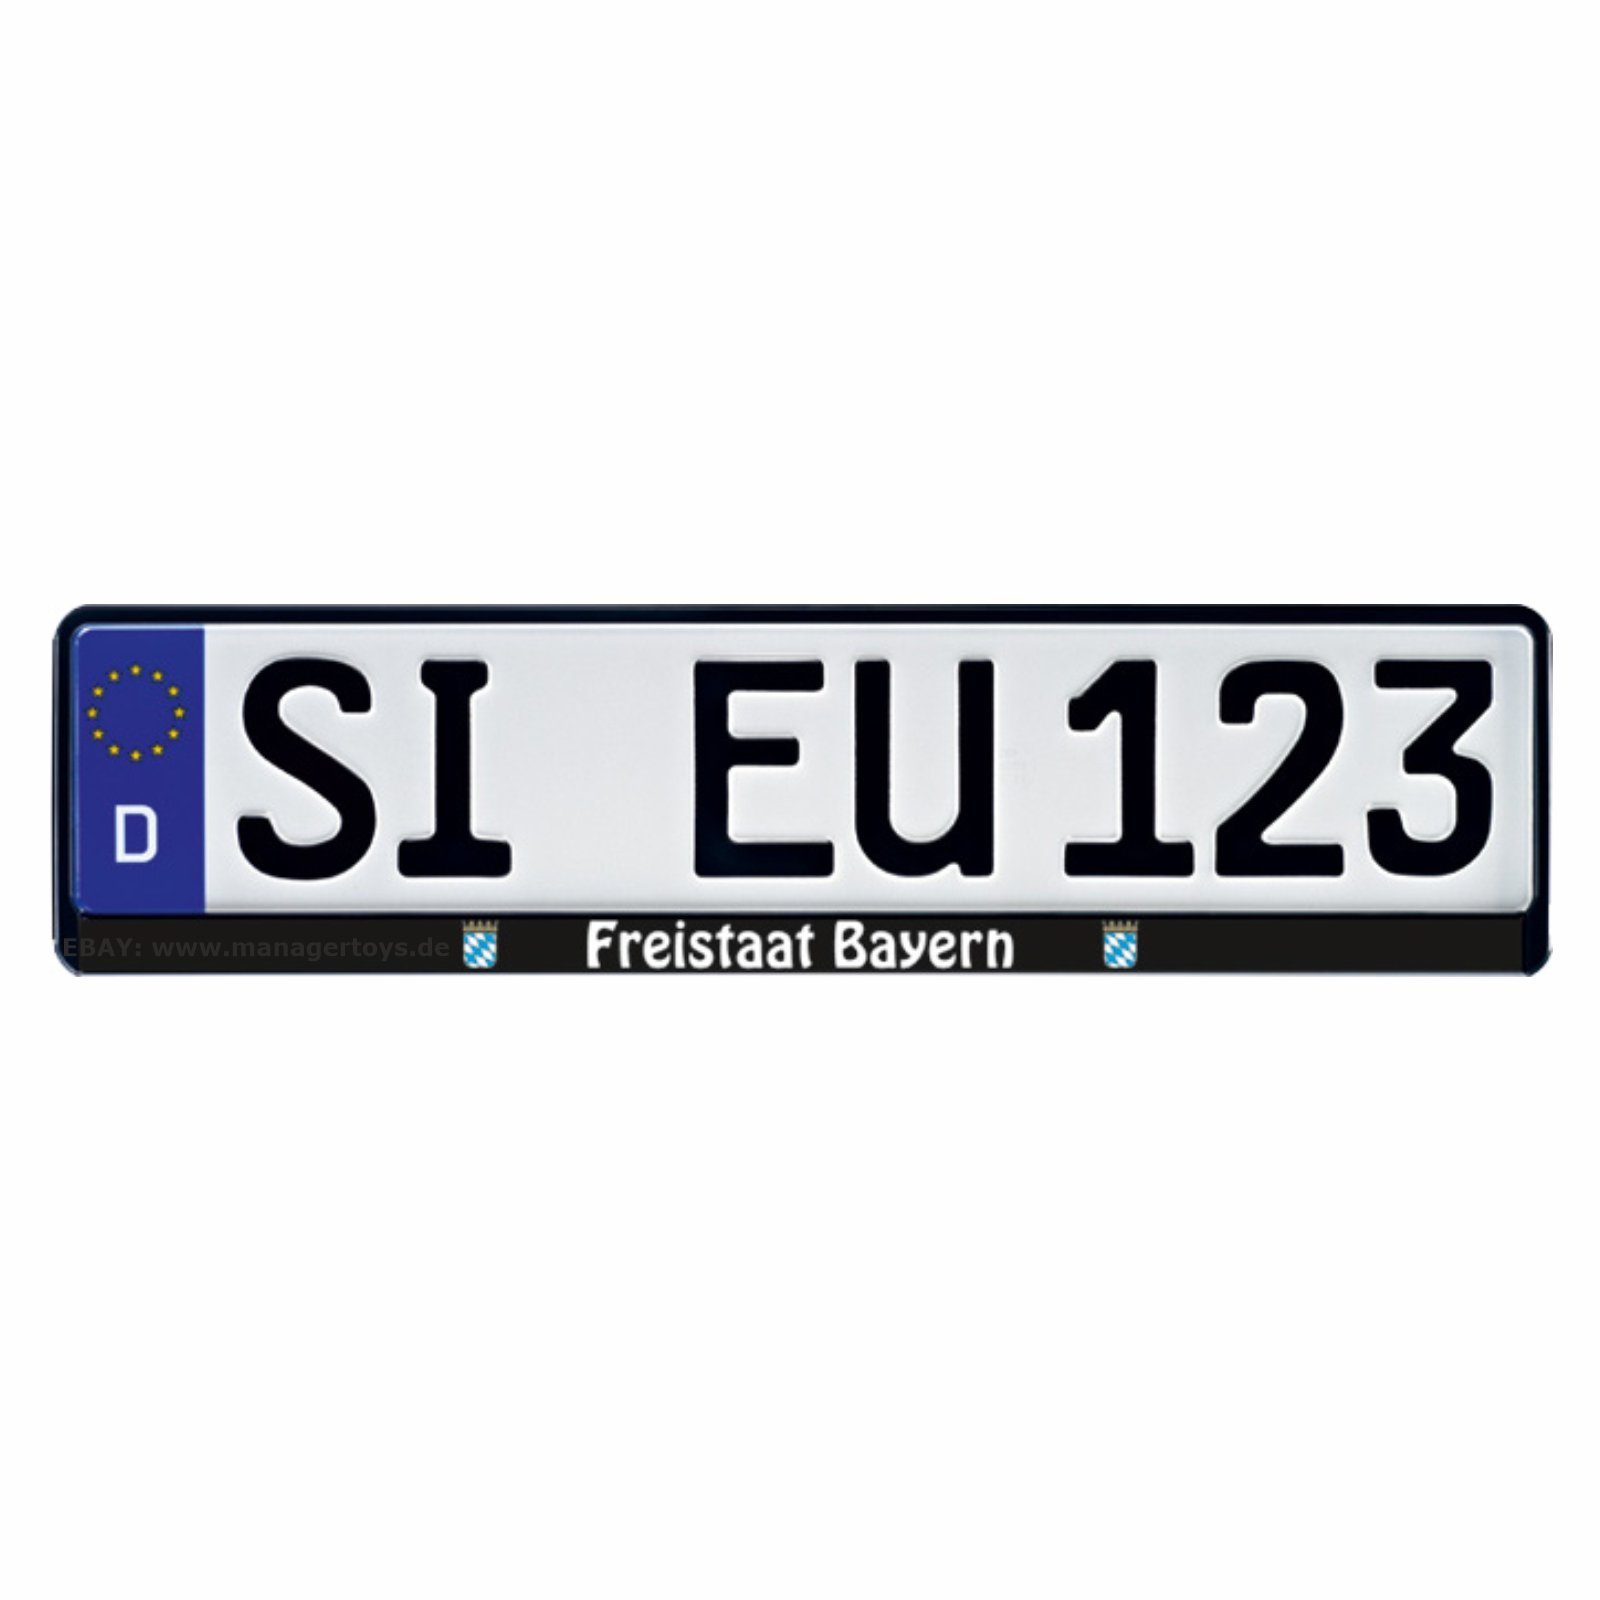 HR Autocomfort Kennzeichenhalter FREISTAAT BAYERN Kennzeichenhalter EU Nummernschildhalter Schildhalter Rahmen